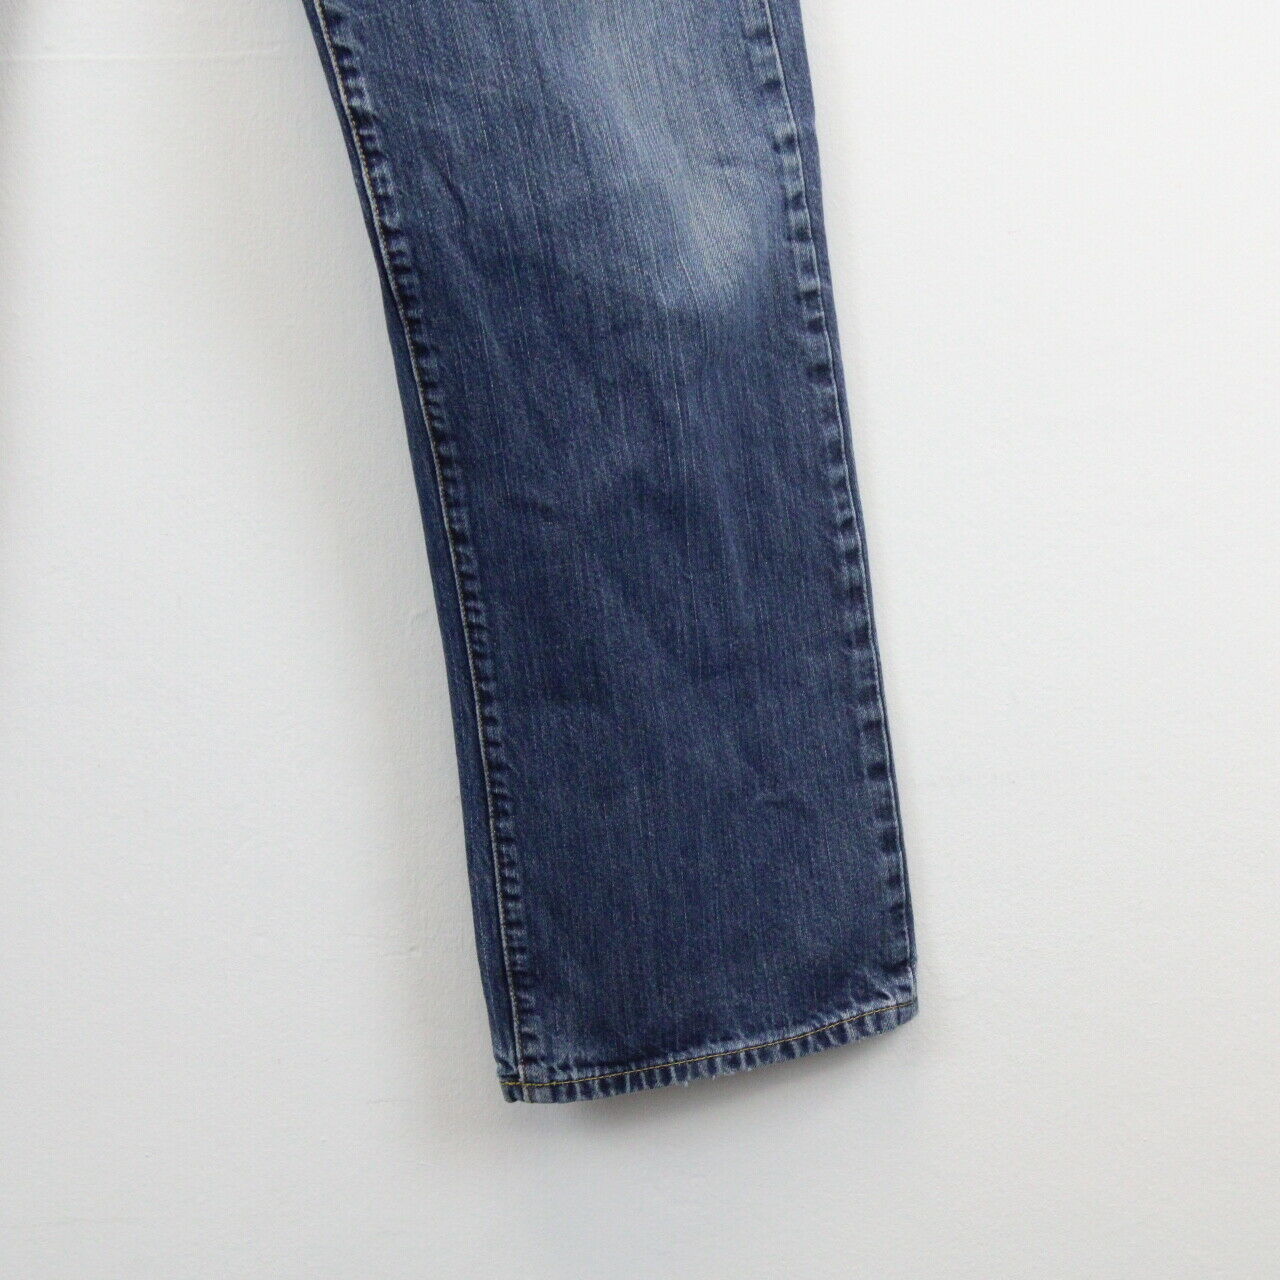 LEVIS 501 Jeans Blue | W34 L32